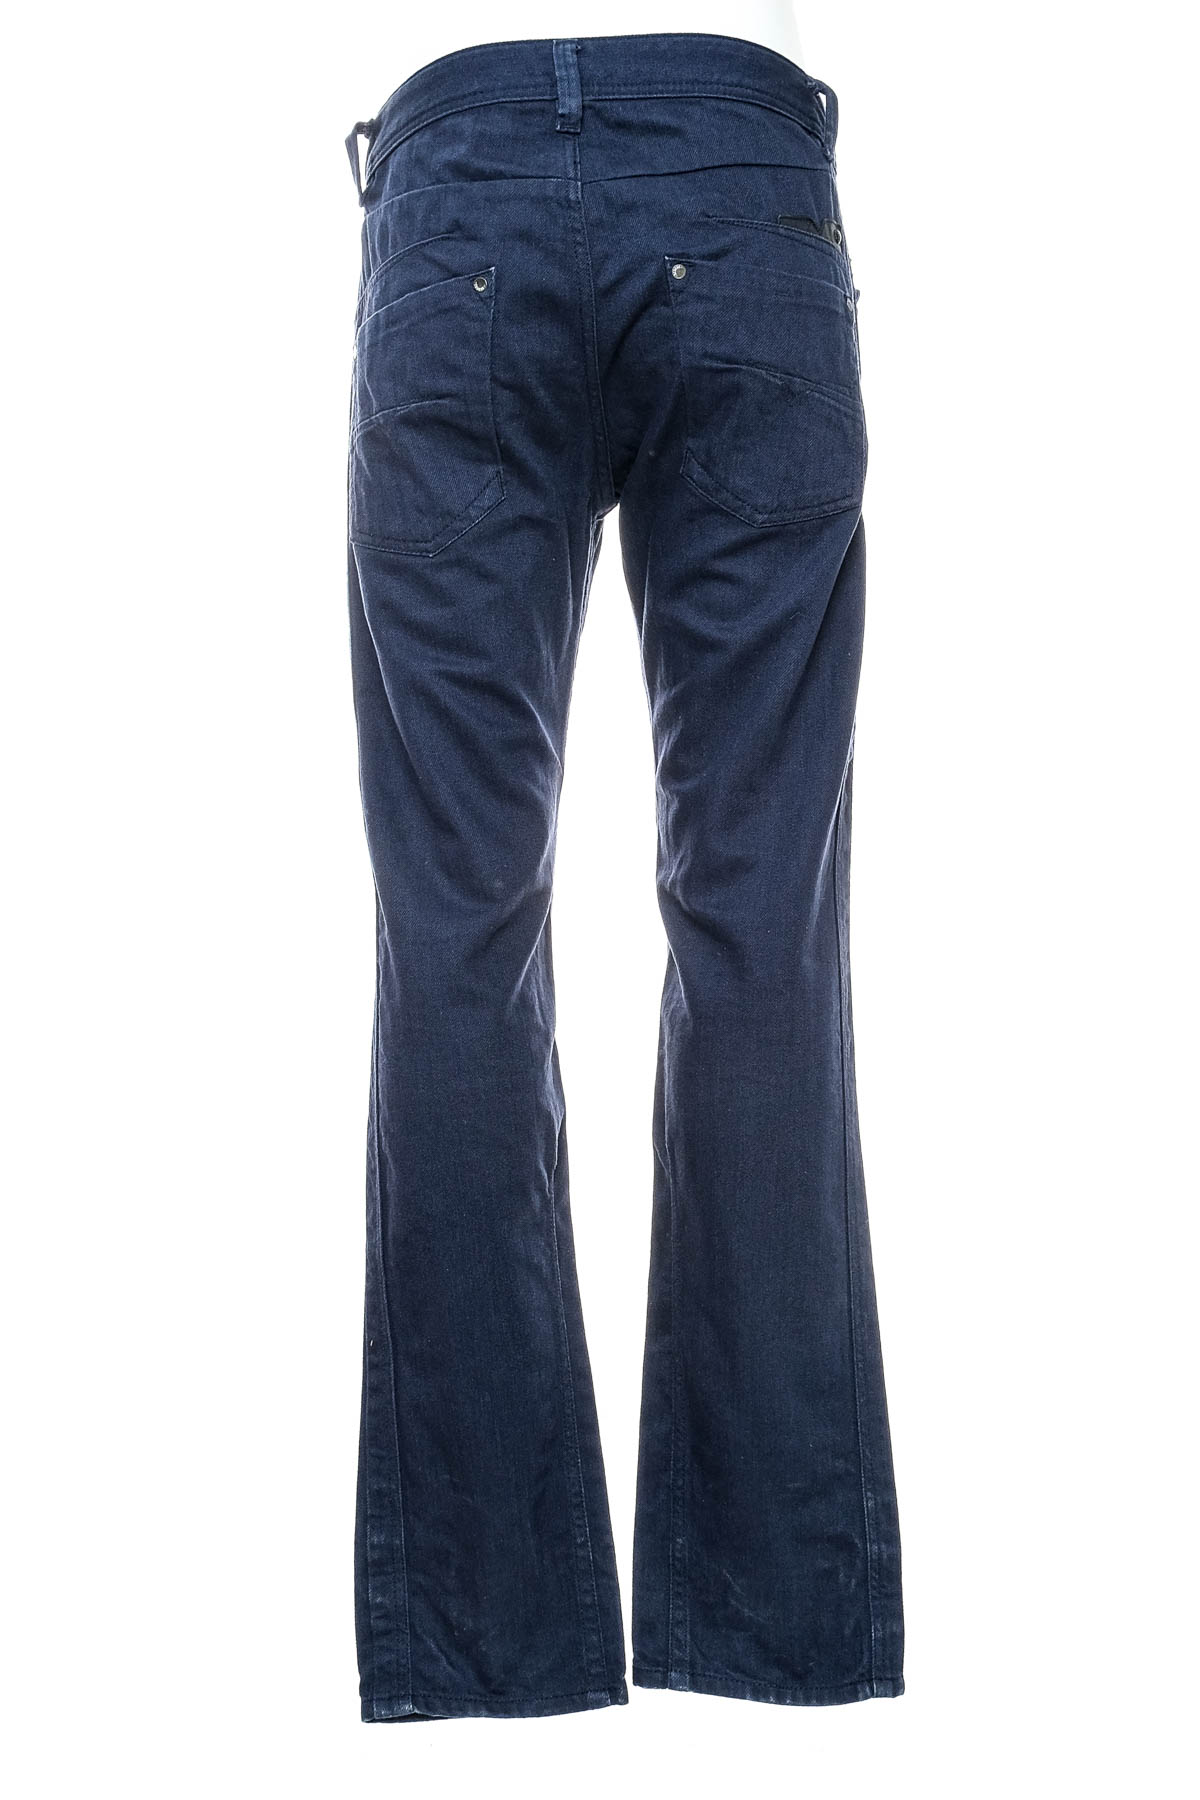 Men's jeans - DIESEL - 1